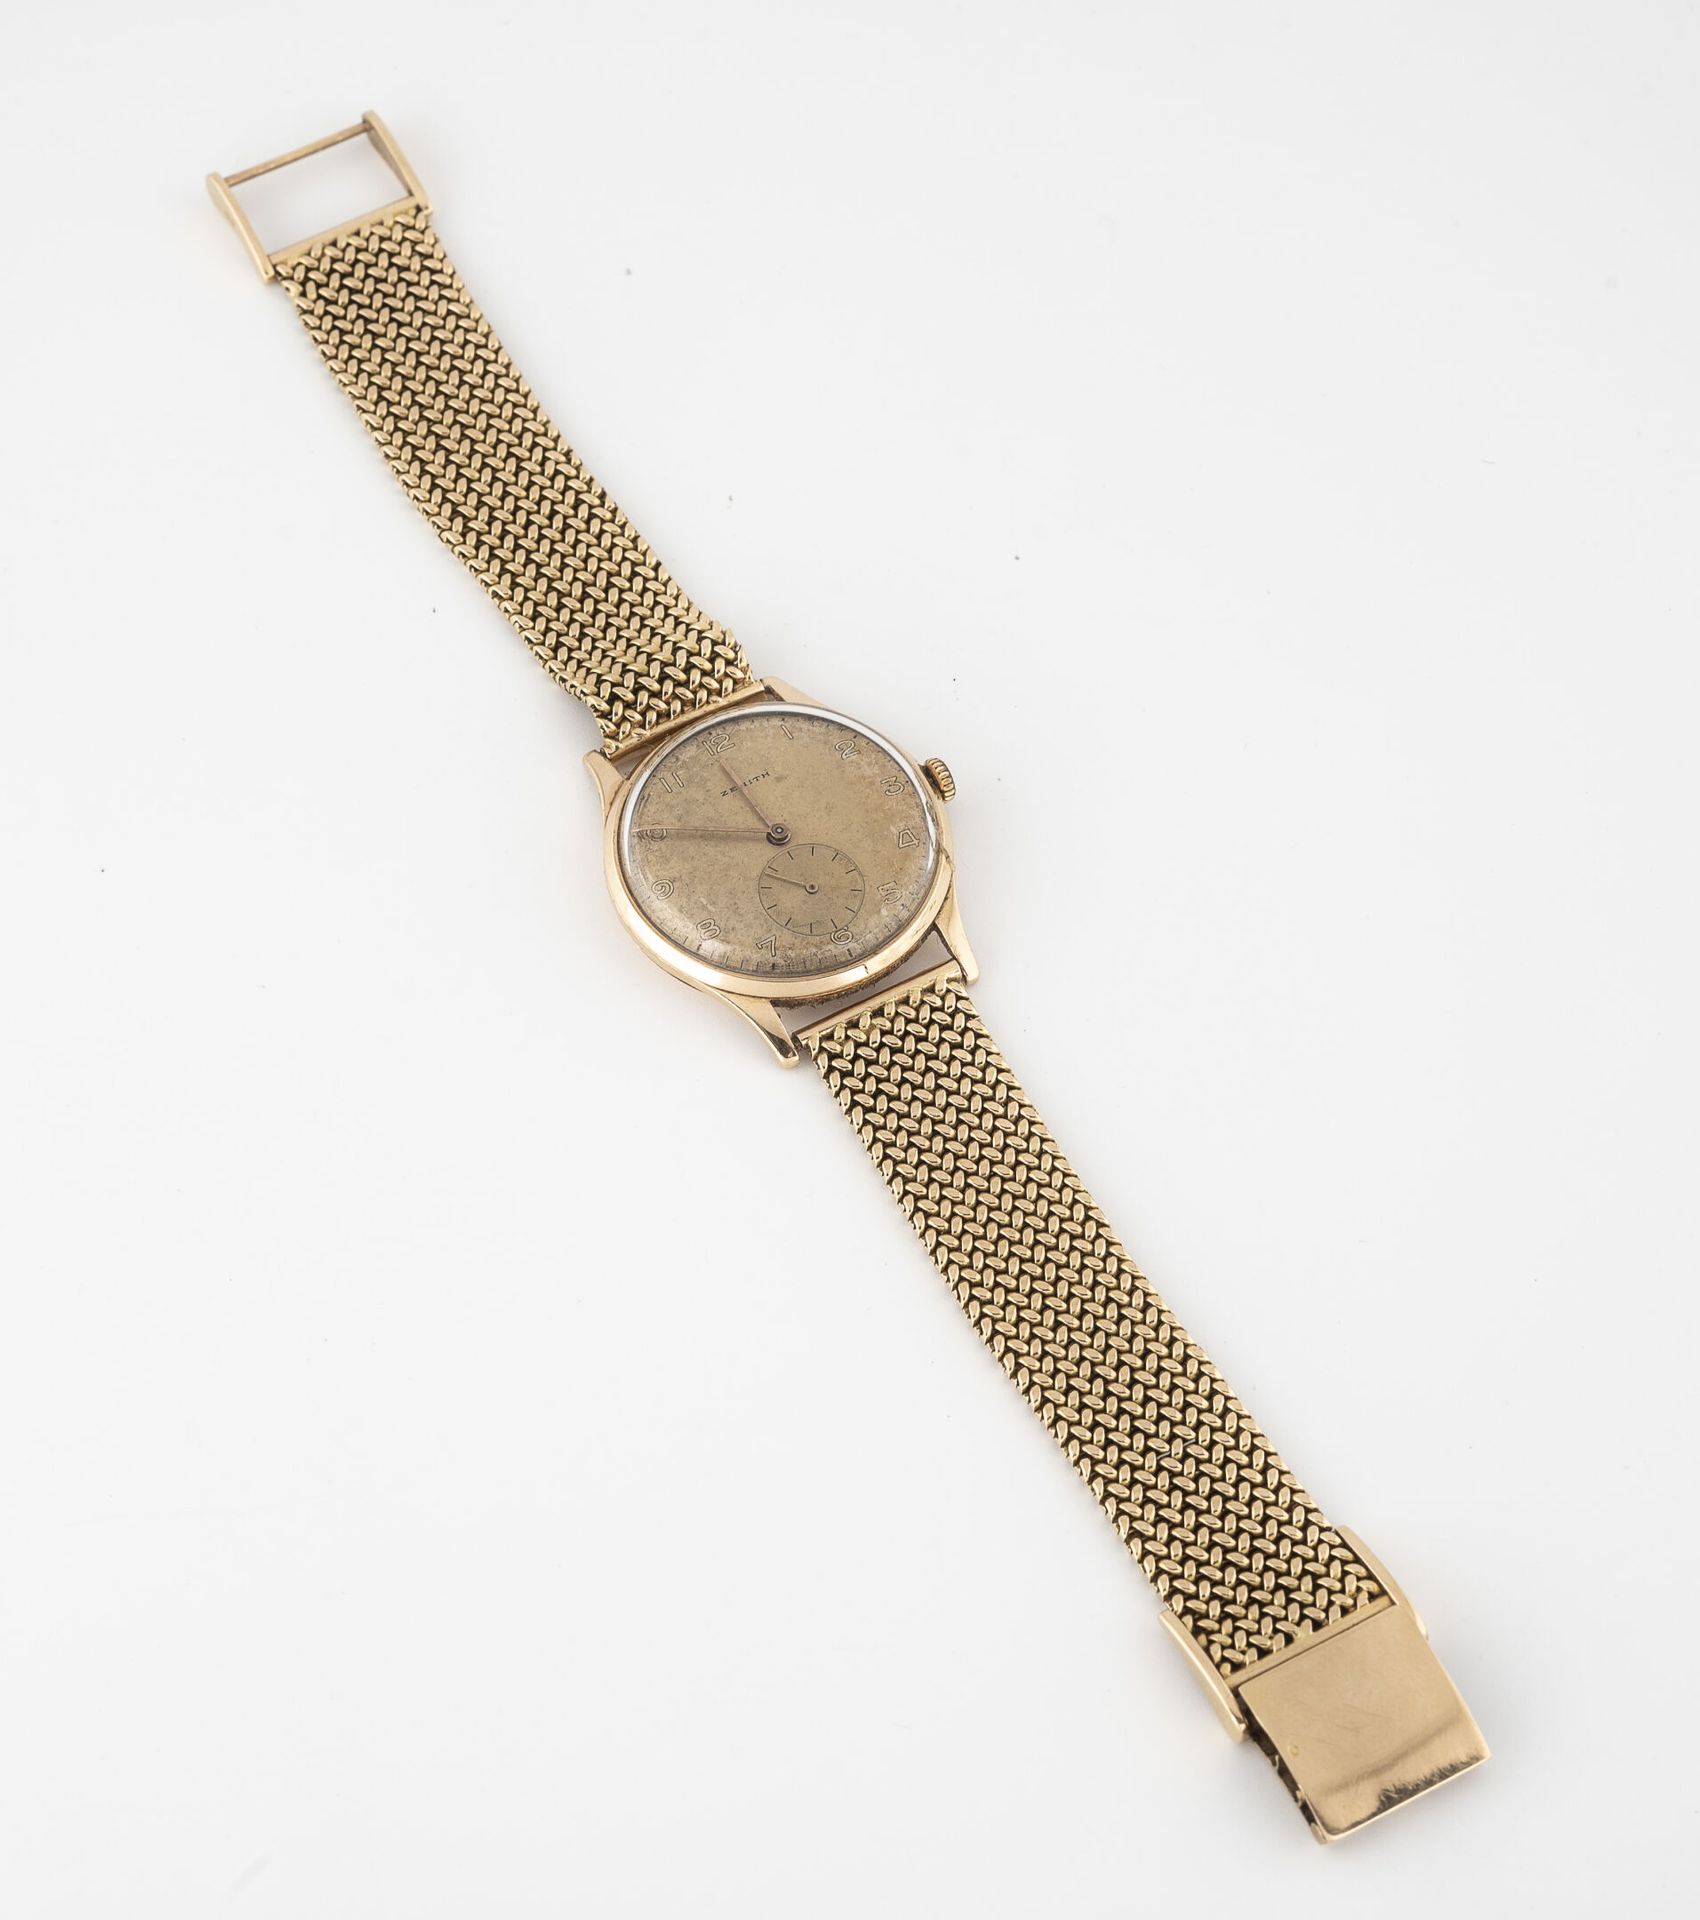 ZENITH 黄金男士腕表（750）。

圆形的箱子。

金色背景的表盘，签名，阿拉伯数字的小时。

秒针位于6点钟方向。

手动上链机械机芯，签名和编号为37&hellip;